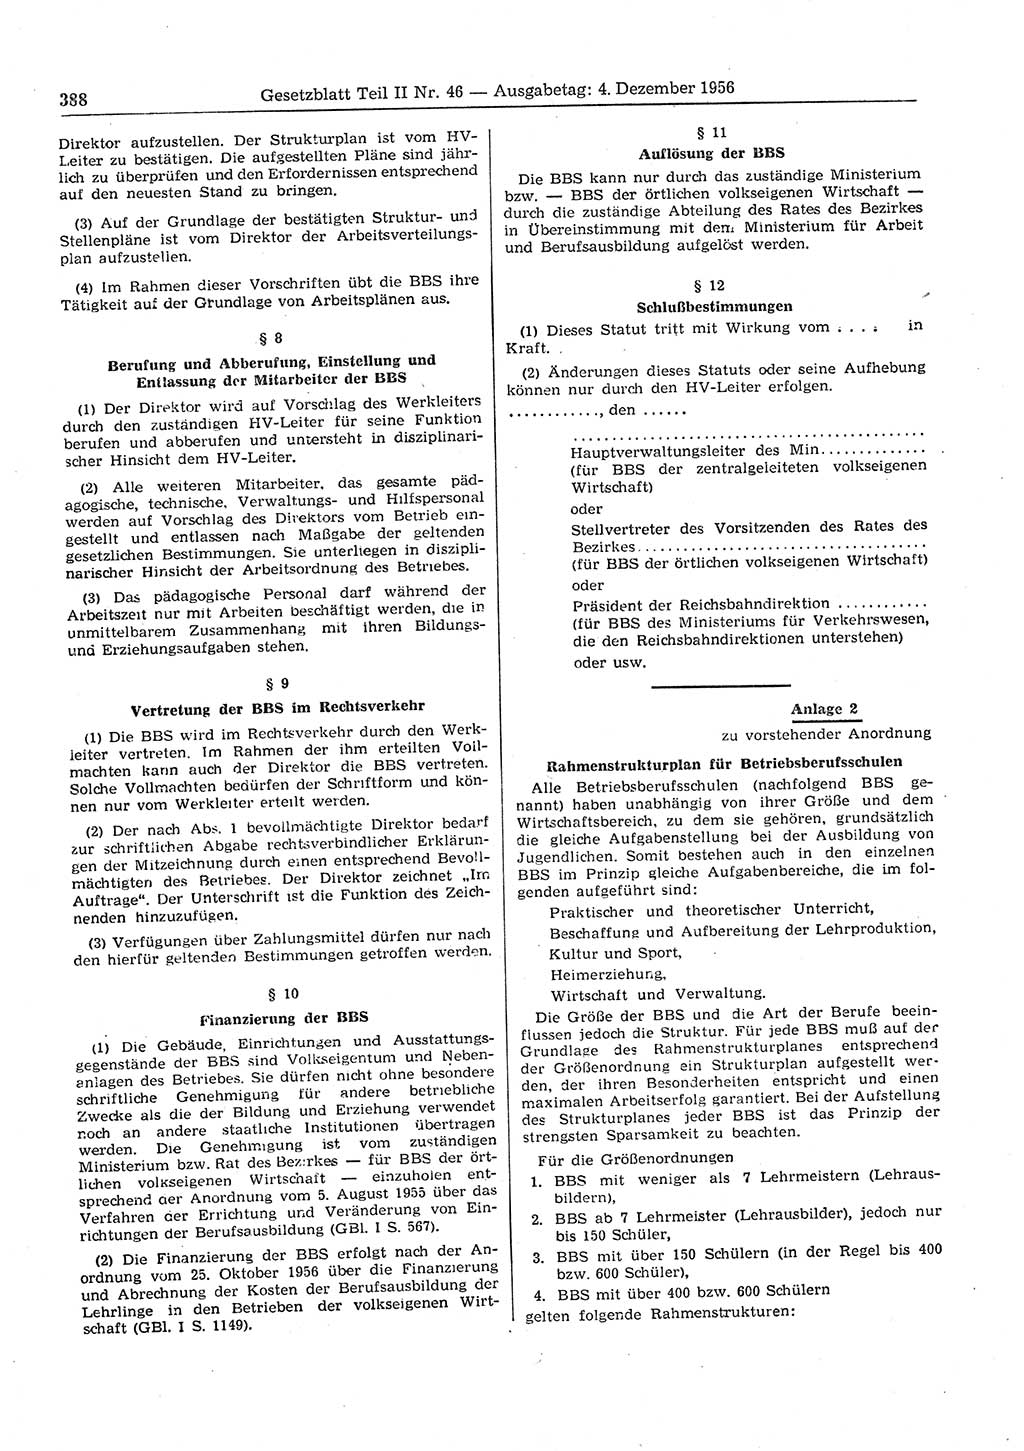 Gesetzblatt (GBl.) der Deutschen Demokratischen Republik (DDR) Teil ⅠⅠ 1956, Seite 388 (GBl. DDR ⅠⅠ 1956, S. 388)